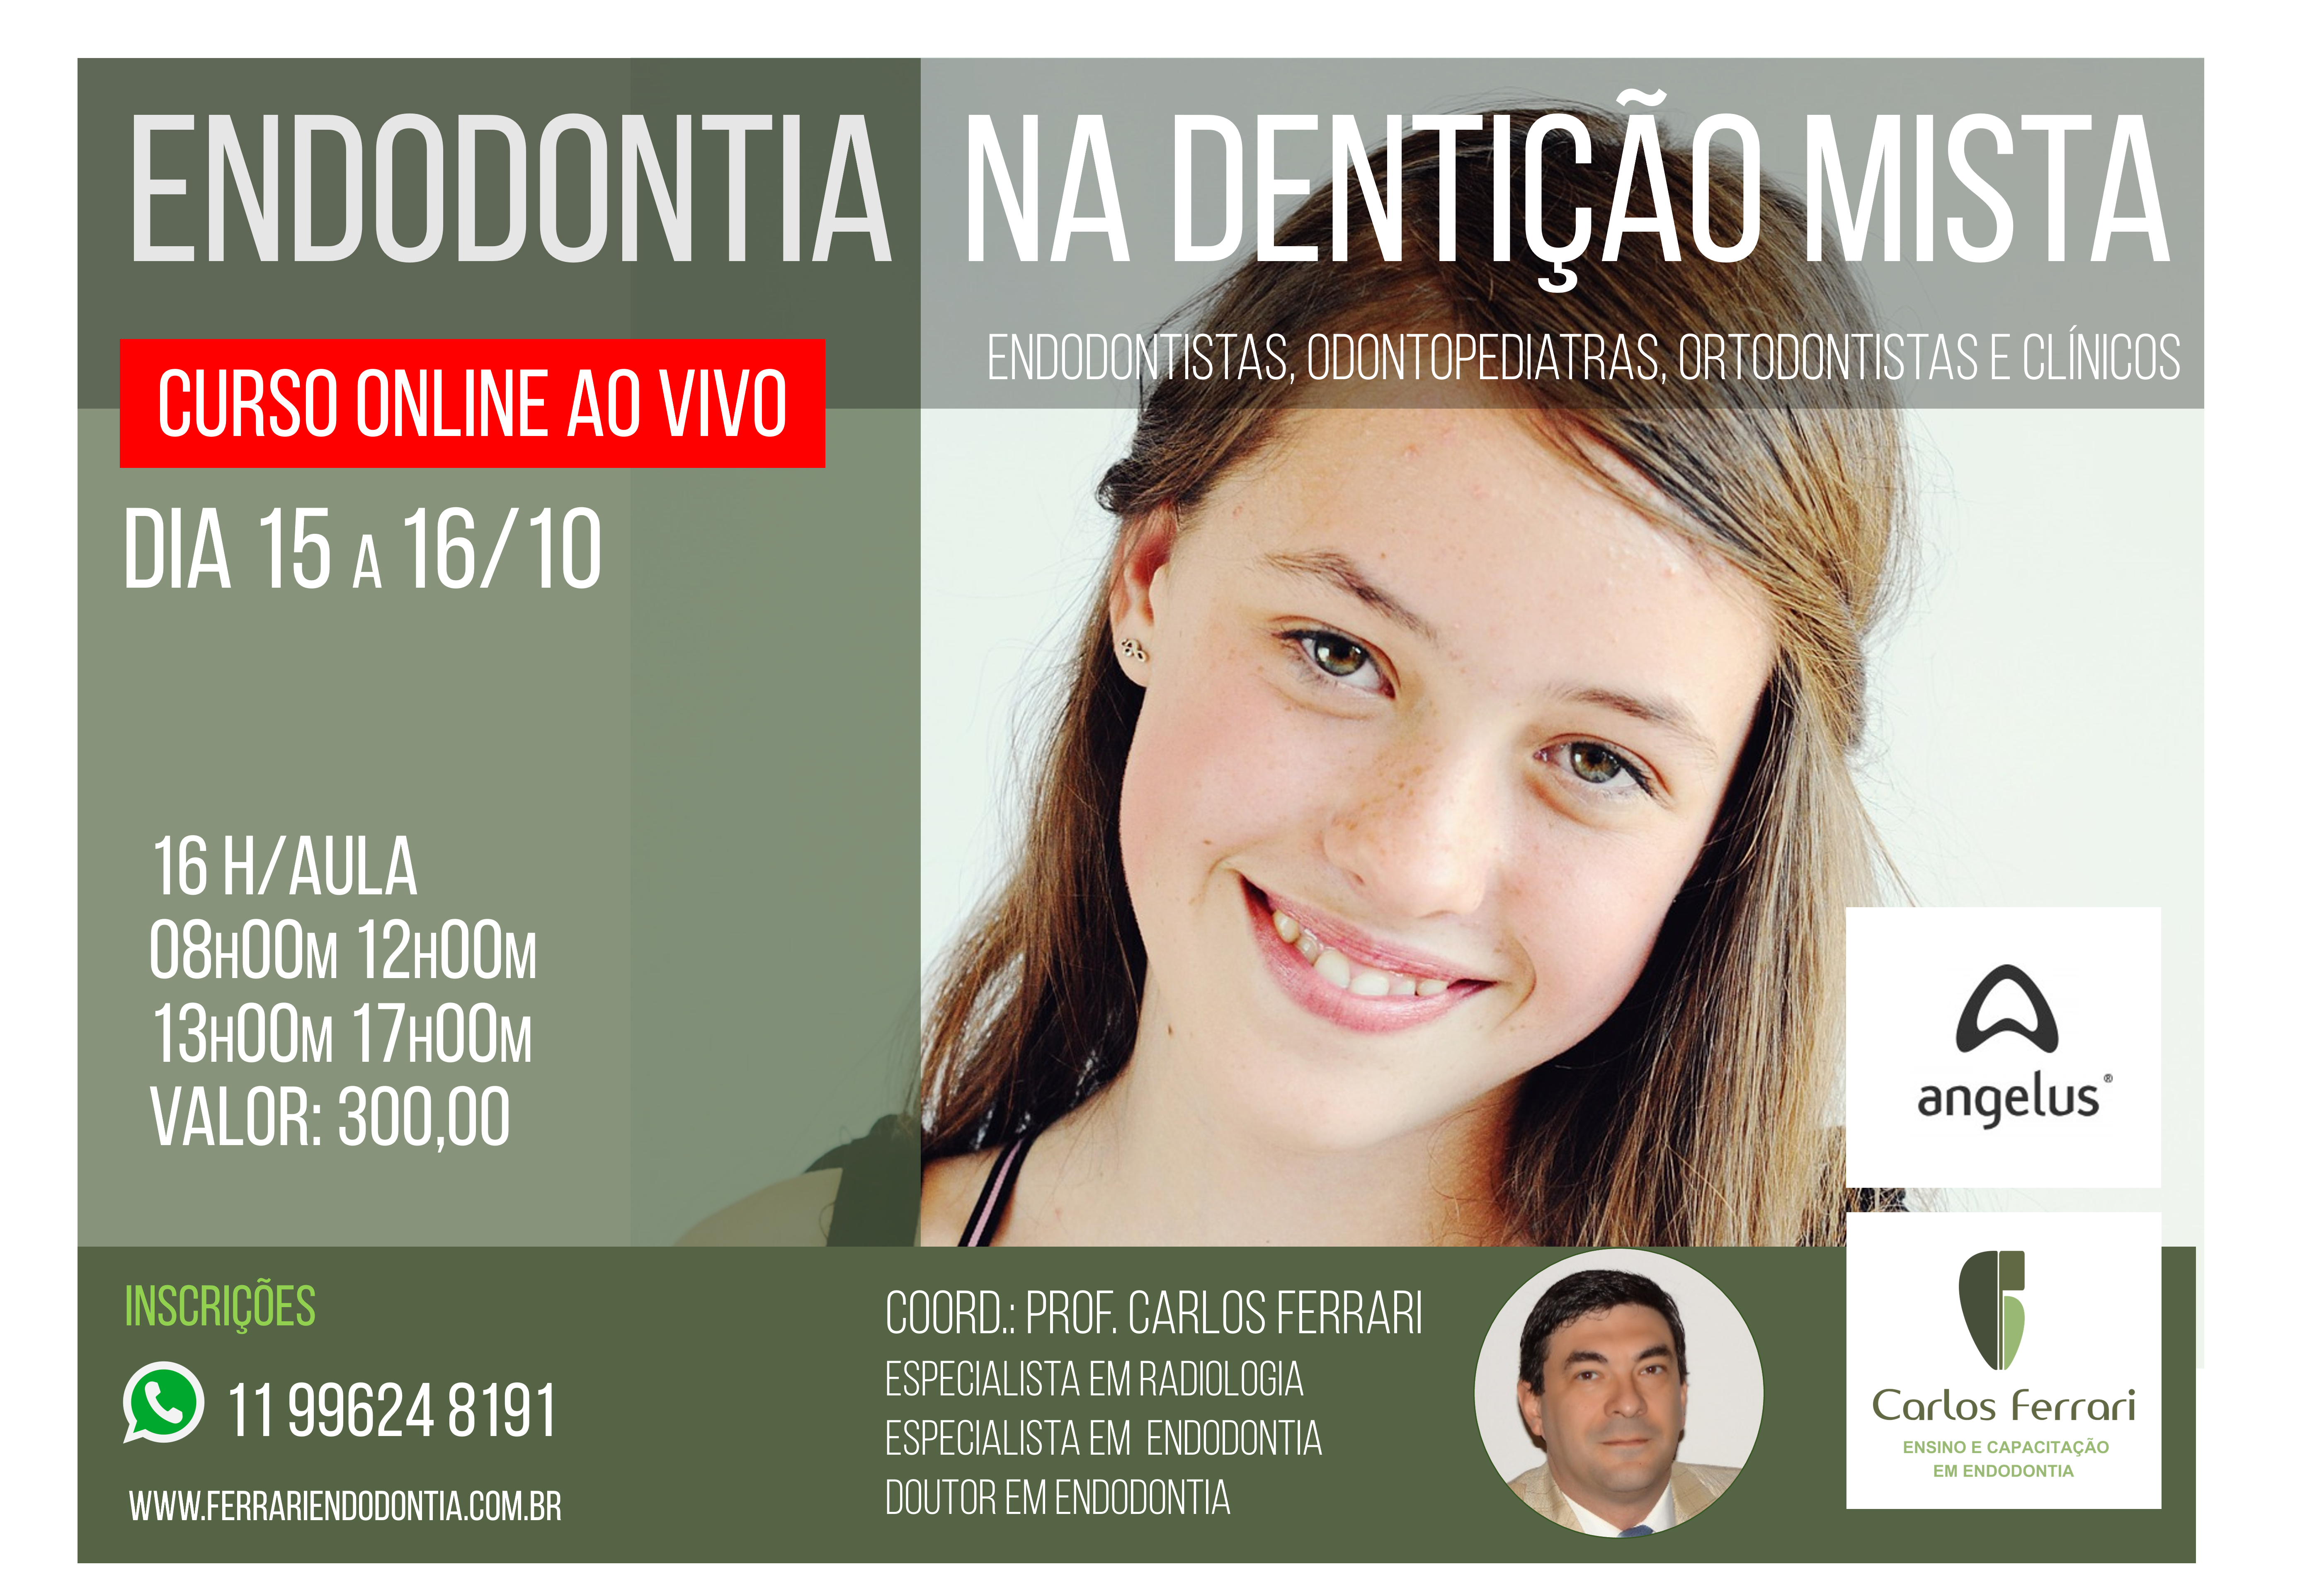 You are currently viewing Curso online. Endodontia na dentição mista.